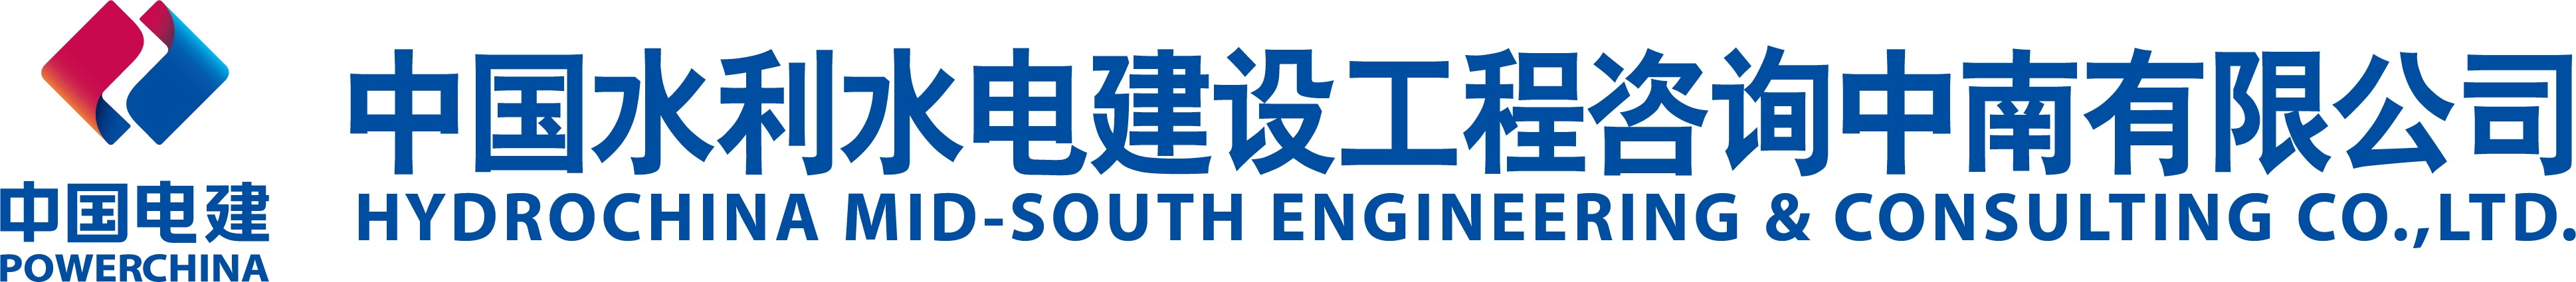 中国水利水电建设工程咨询中南有限公司